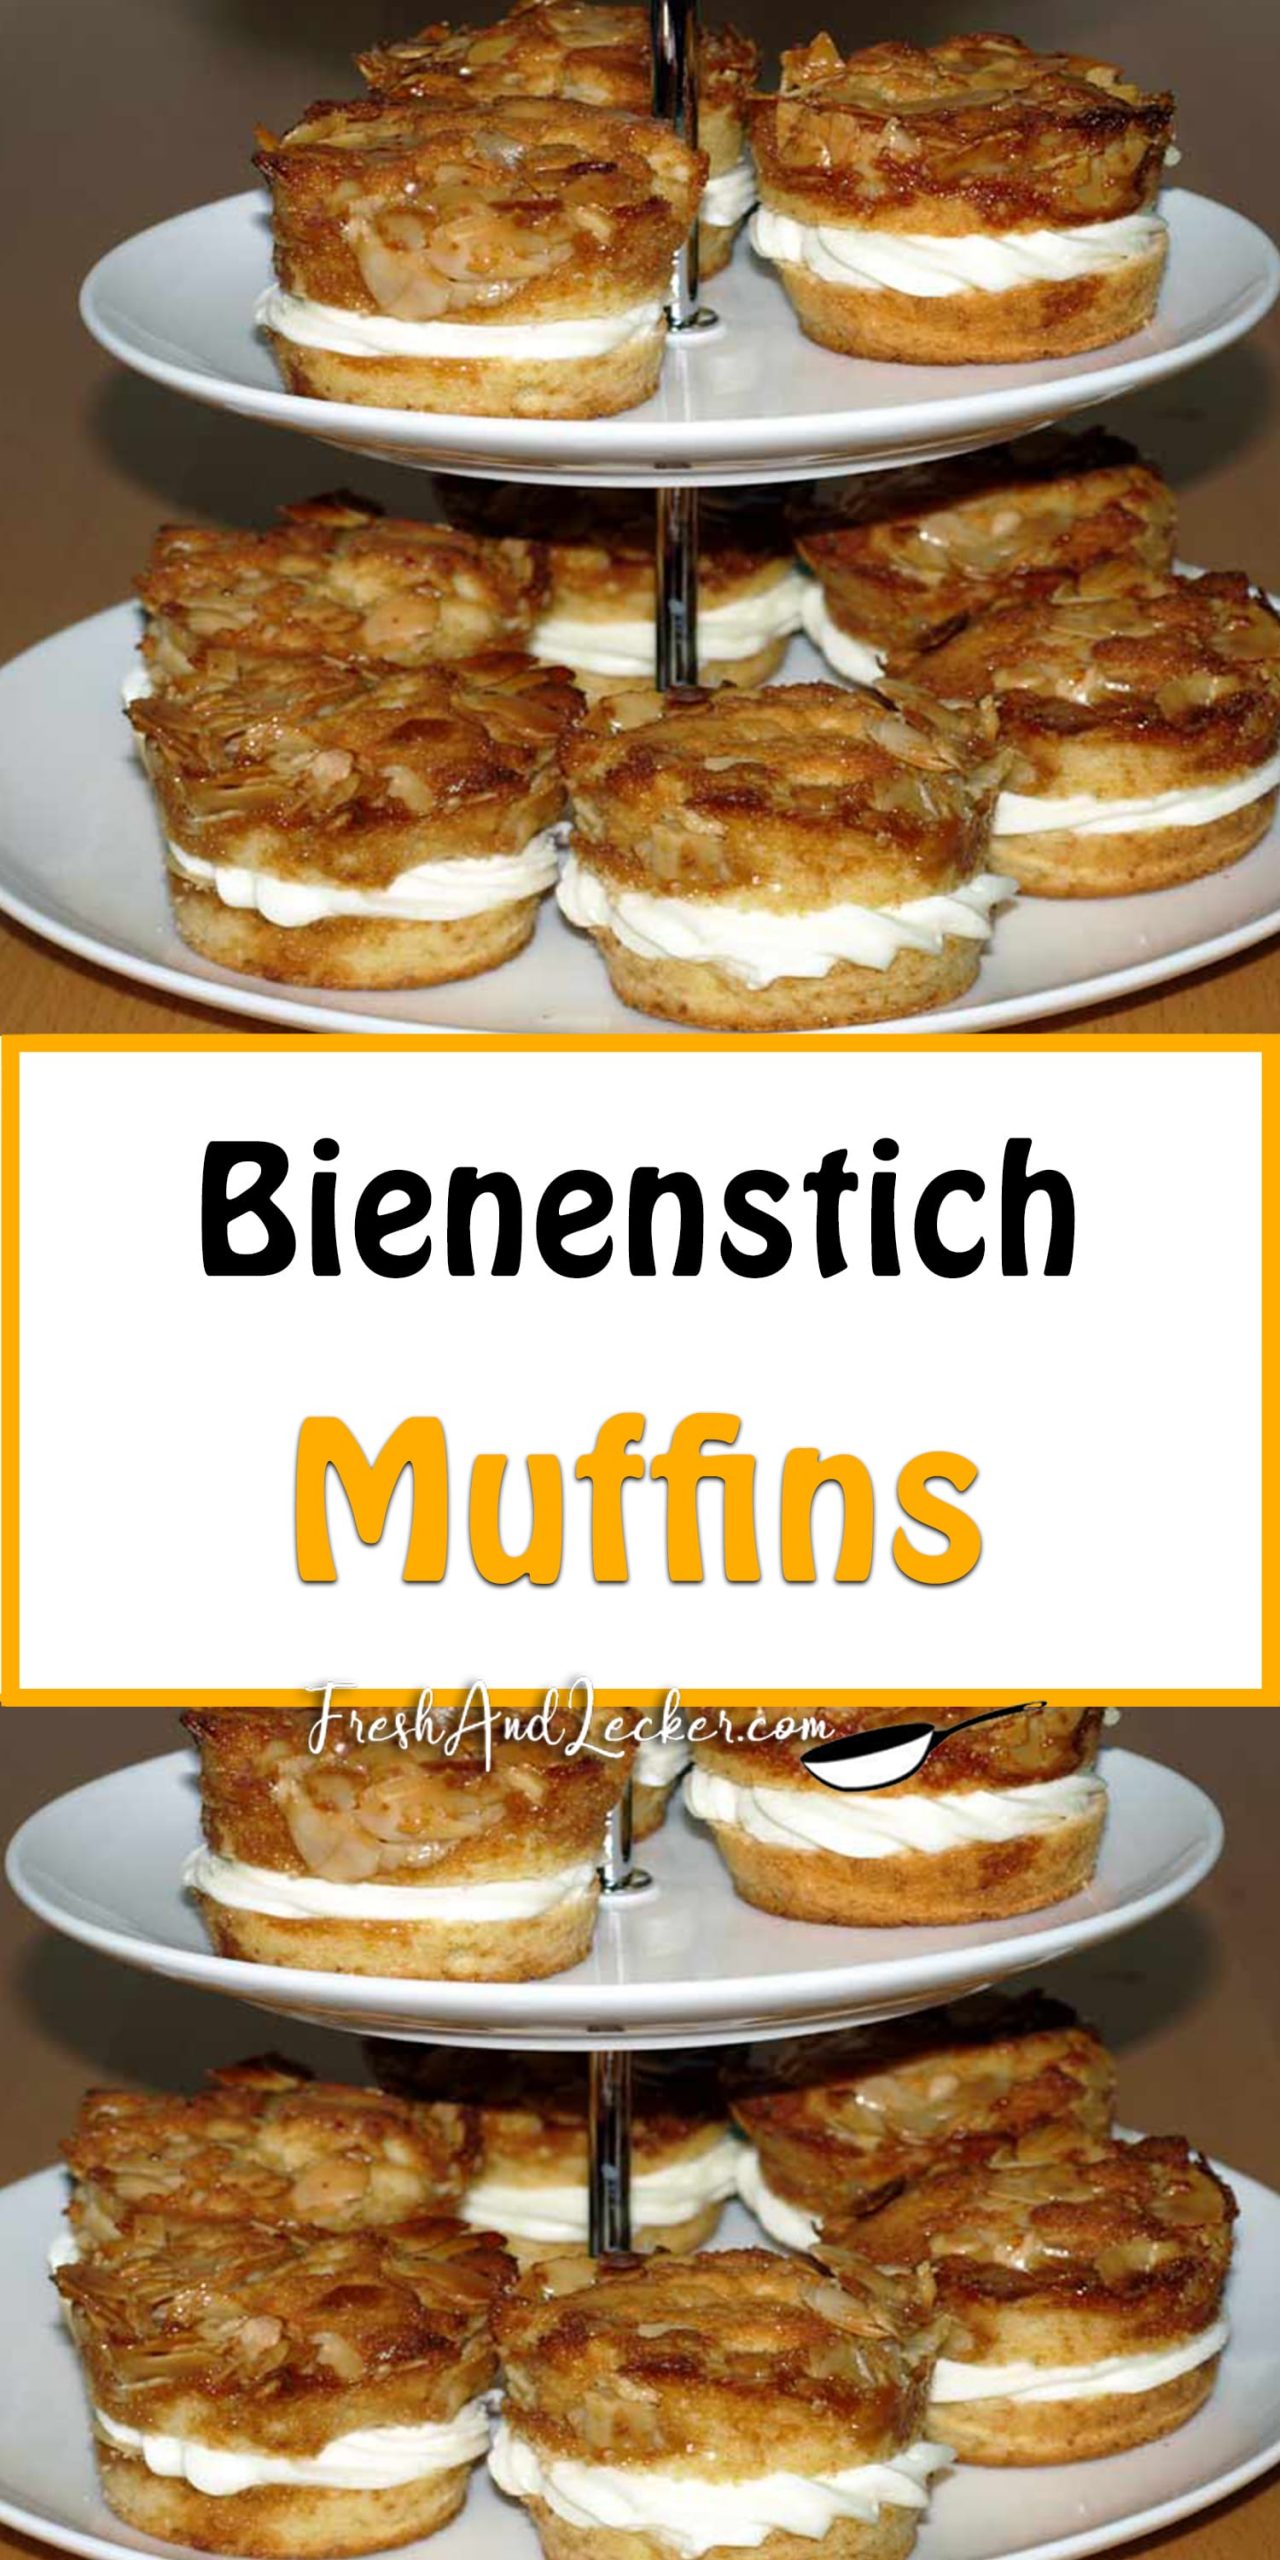 Bienenstich-Muffins - Fresh Lecker